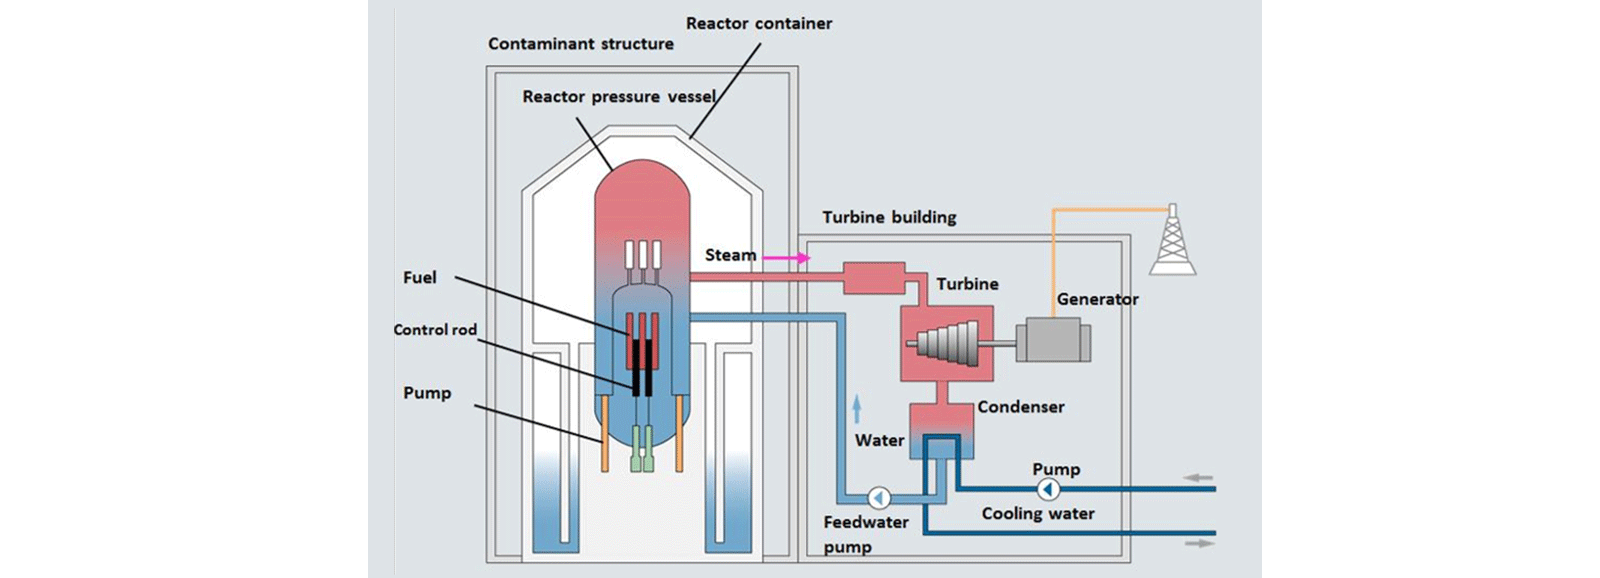 Centrali nucleari: reattore ad acqua bollente (BWR)